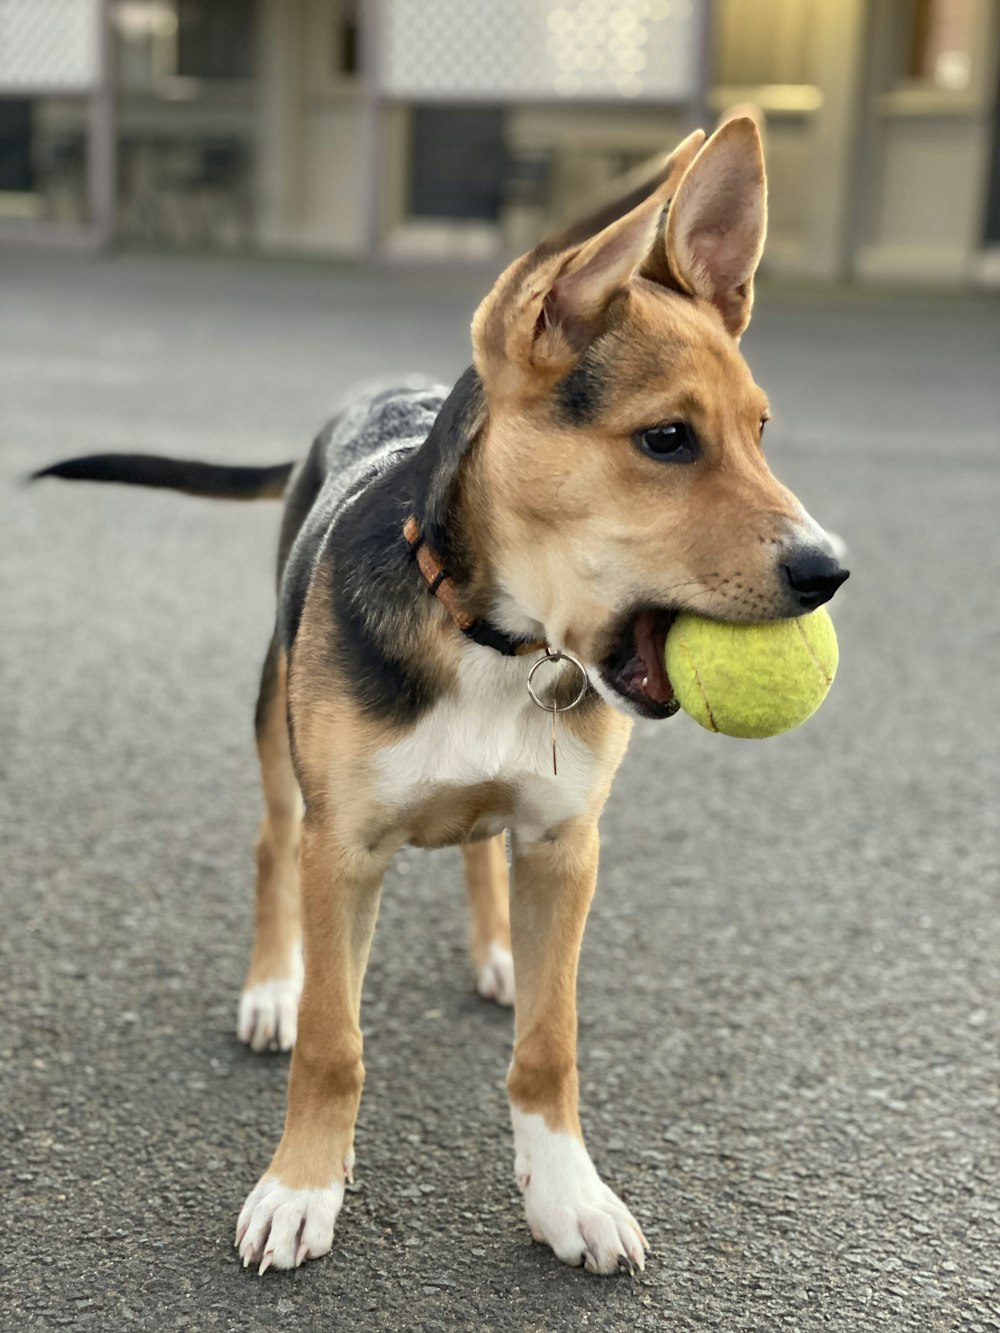 茶色と黒の短いコートの犬がテニスボールを噛む